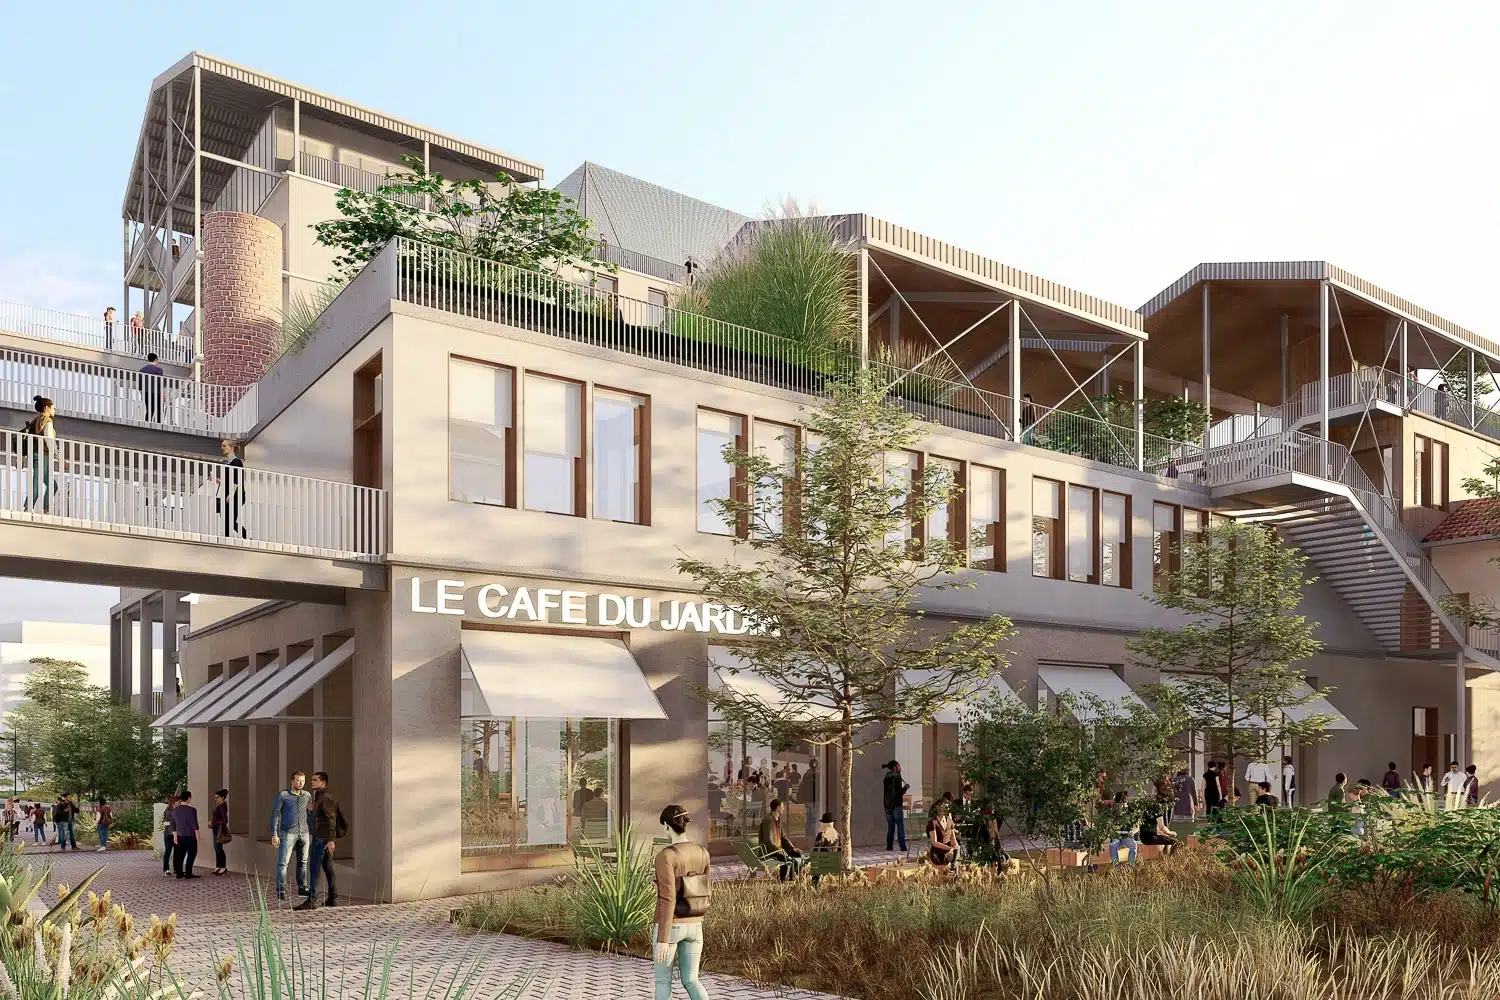 Euroméditerranée, Euroméditerranée recherche des candidats pour construire 120 logements « bas carbone », Made in Marseille